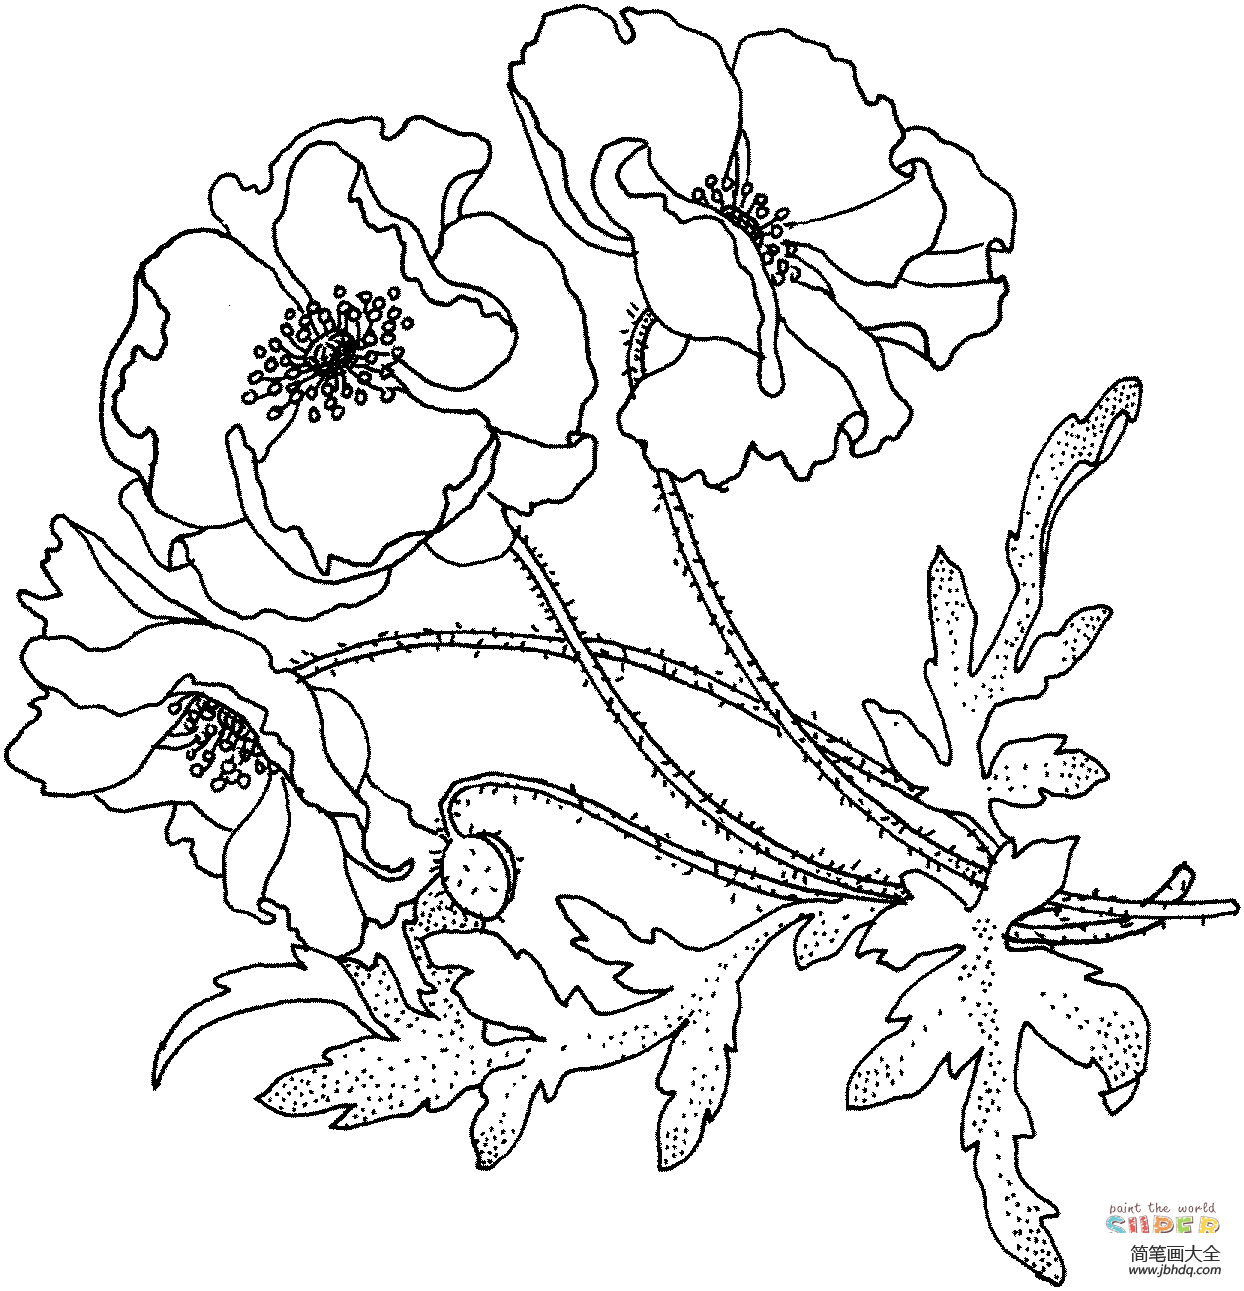 罂粟花简笔画 手绘图片